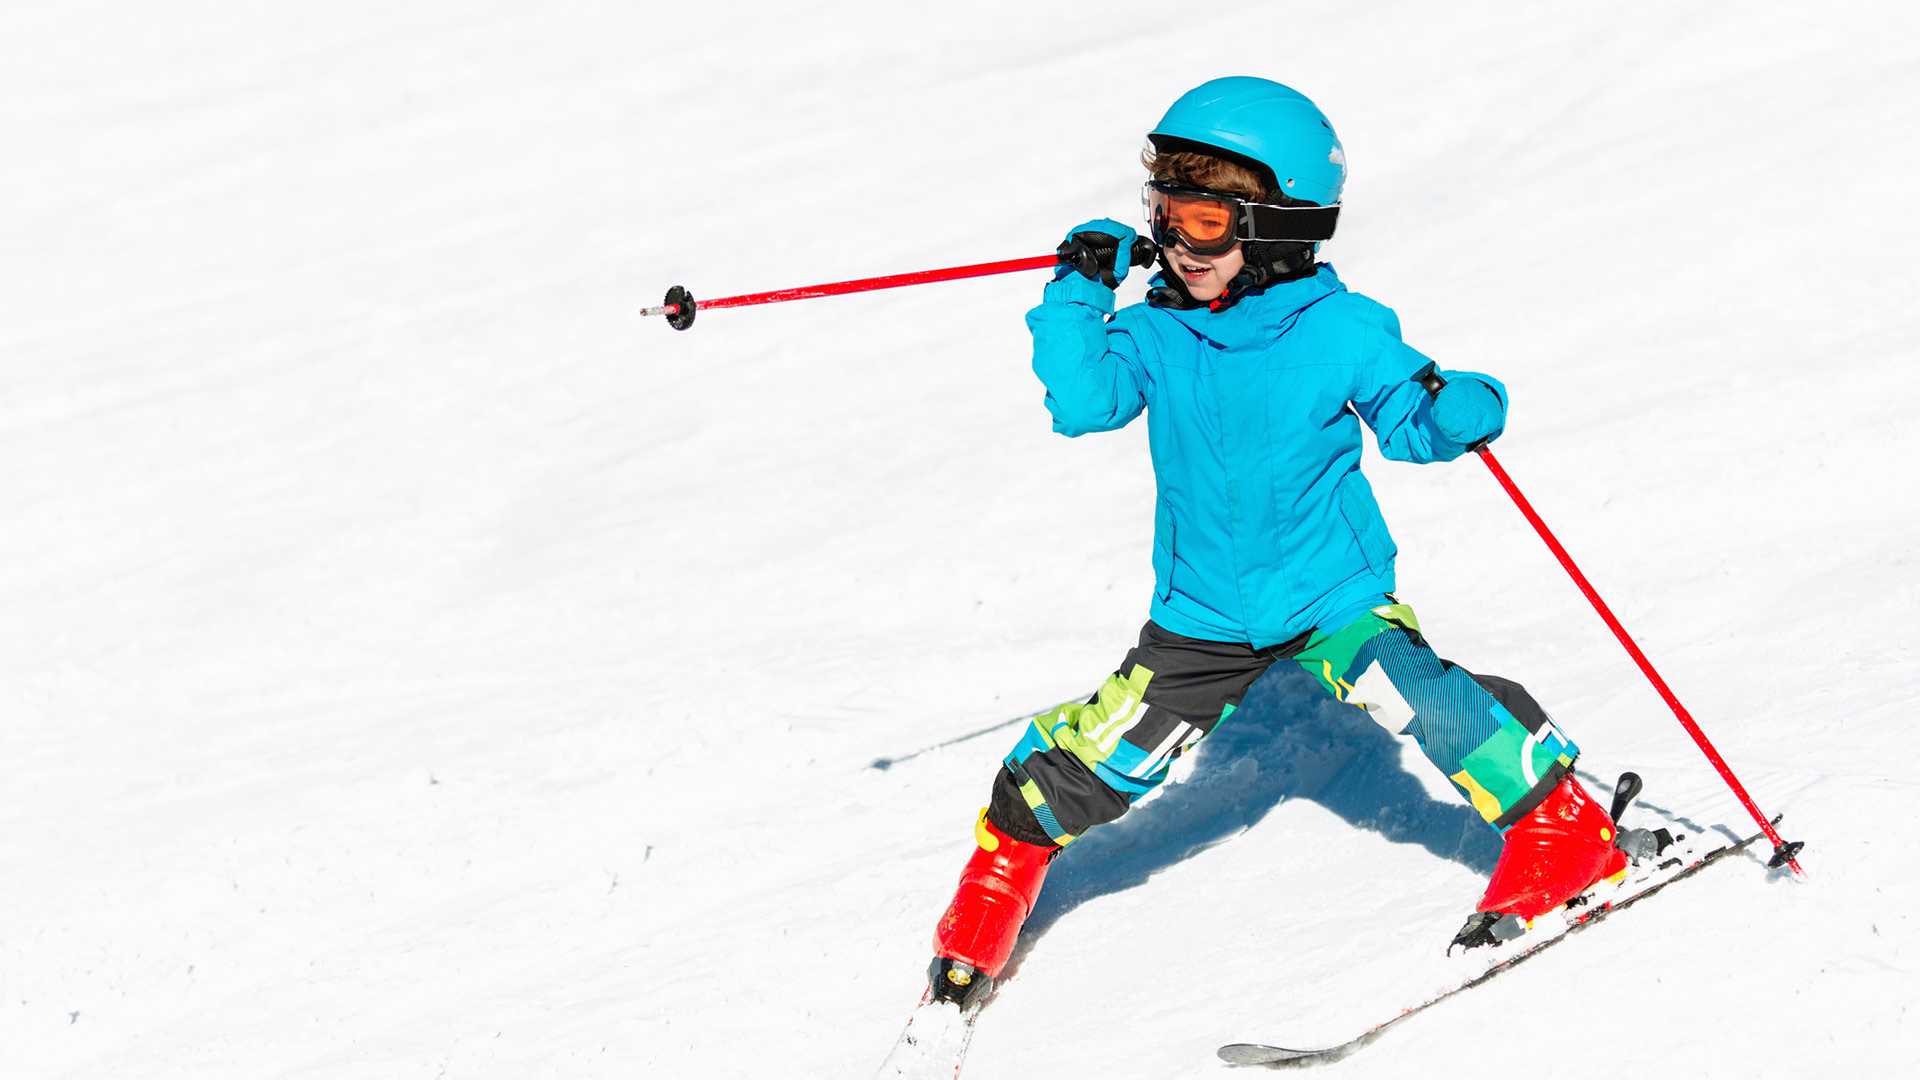 Ein kleines Kind mit einem auffallend blauem Skianzug fährt Ski. 